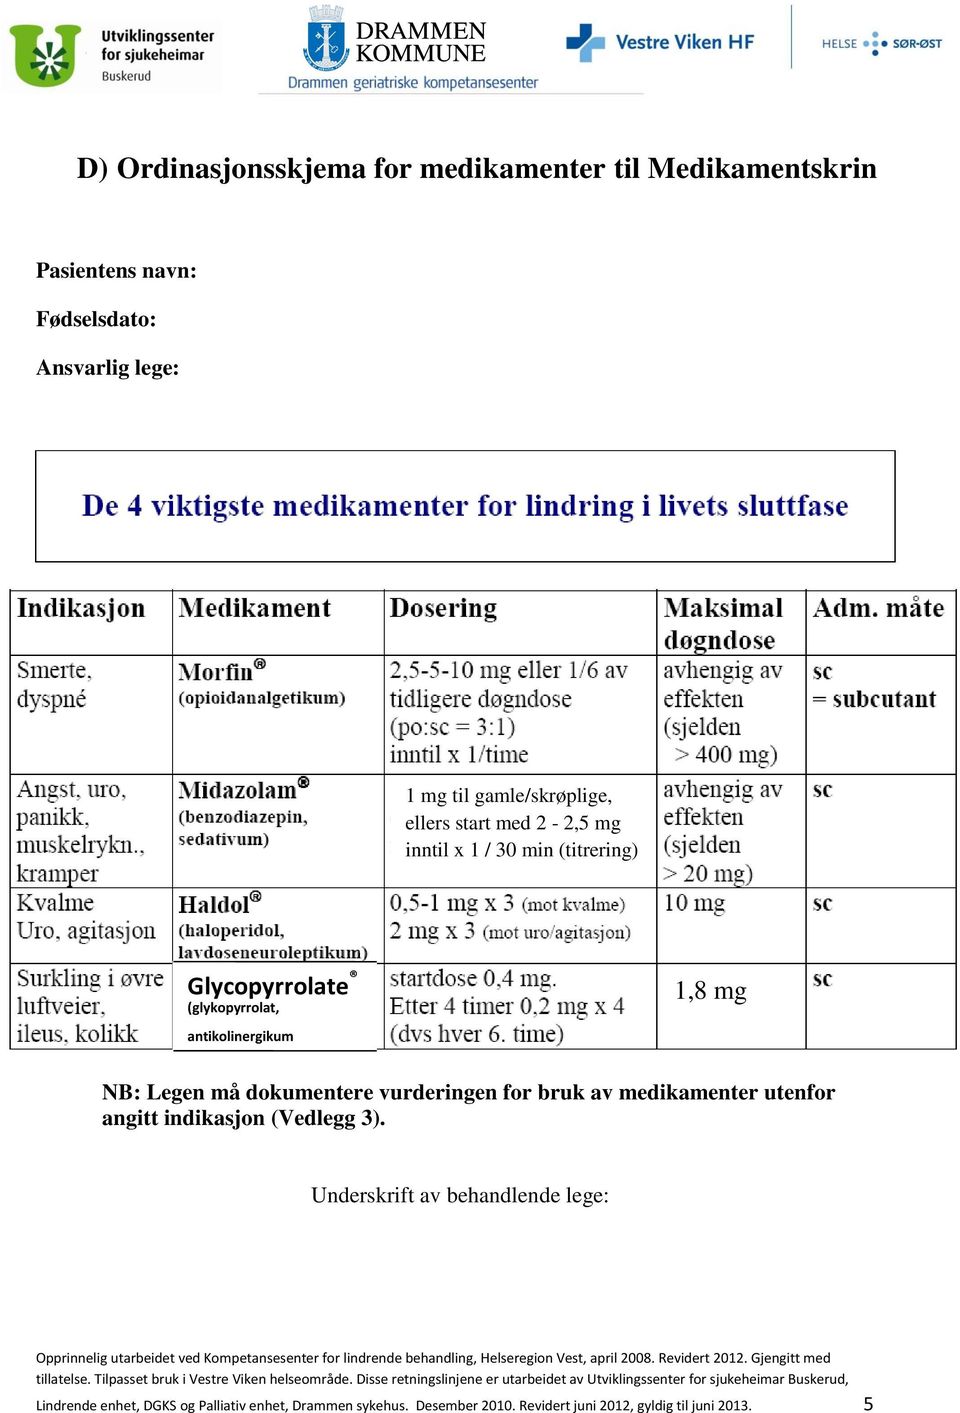 antikolinergikum NB: Legen må dokumentere vurderingen for bruk av medikamenter utenfor angitt indikasjon (Vedlegg 3).